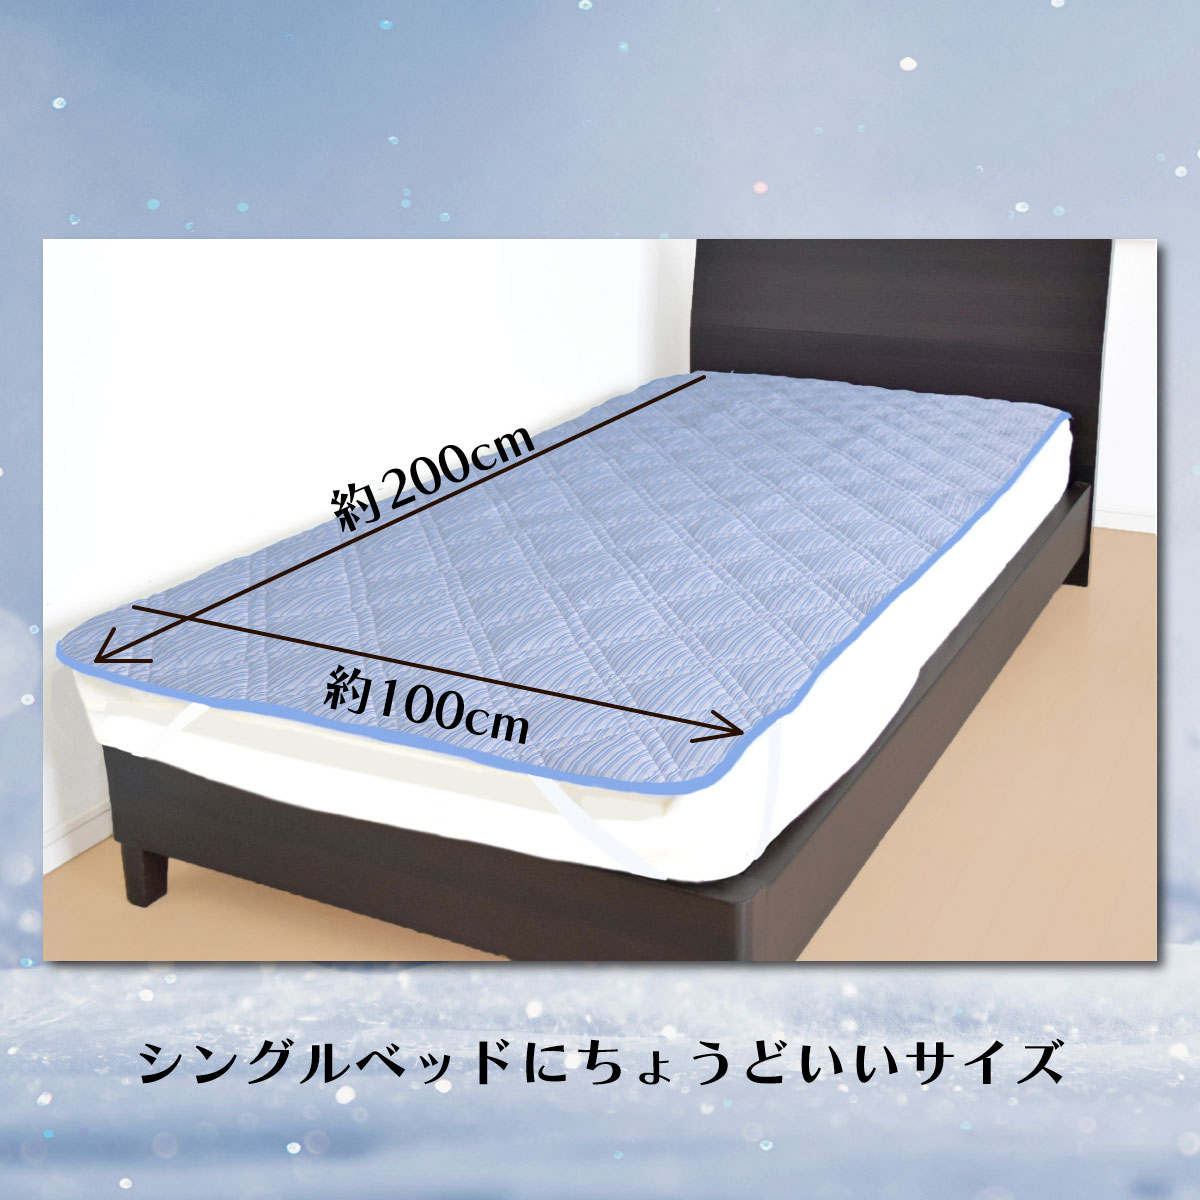 シングルベッドにちょうどよい大きさである写真を載せたバナー画像